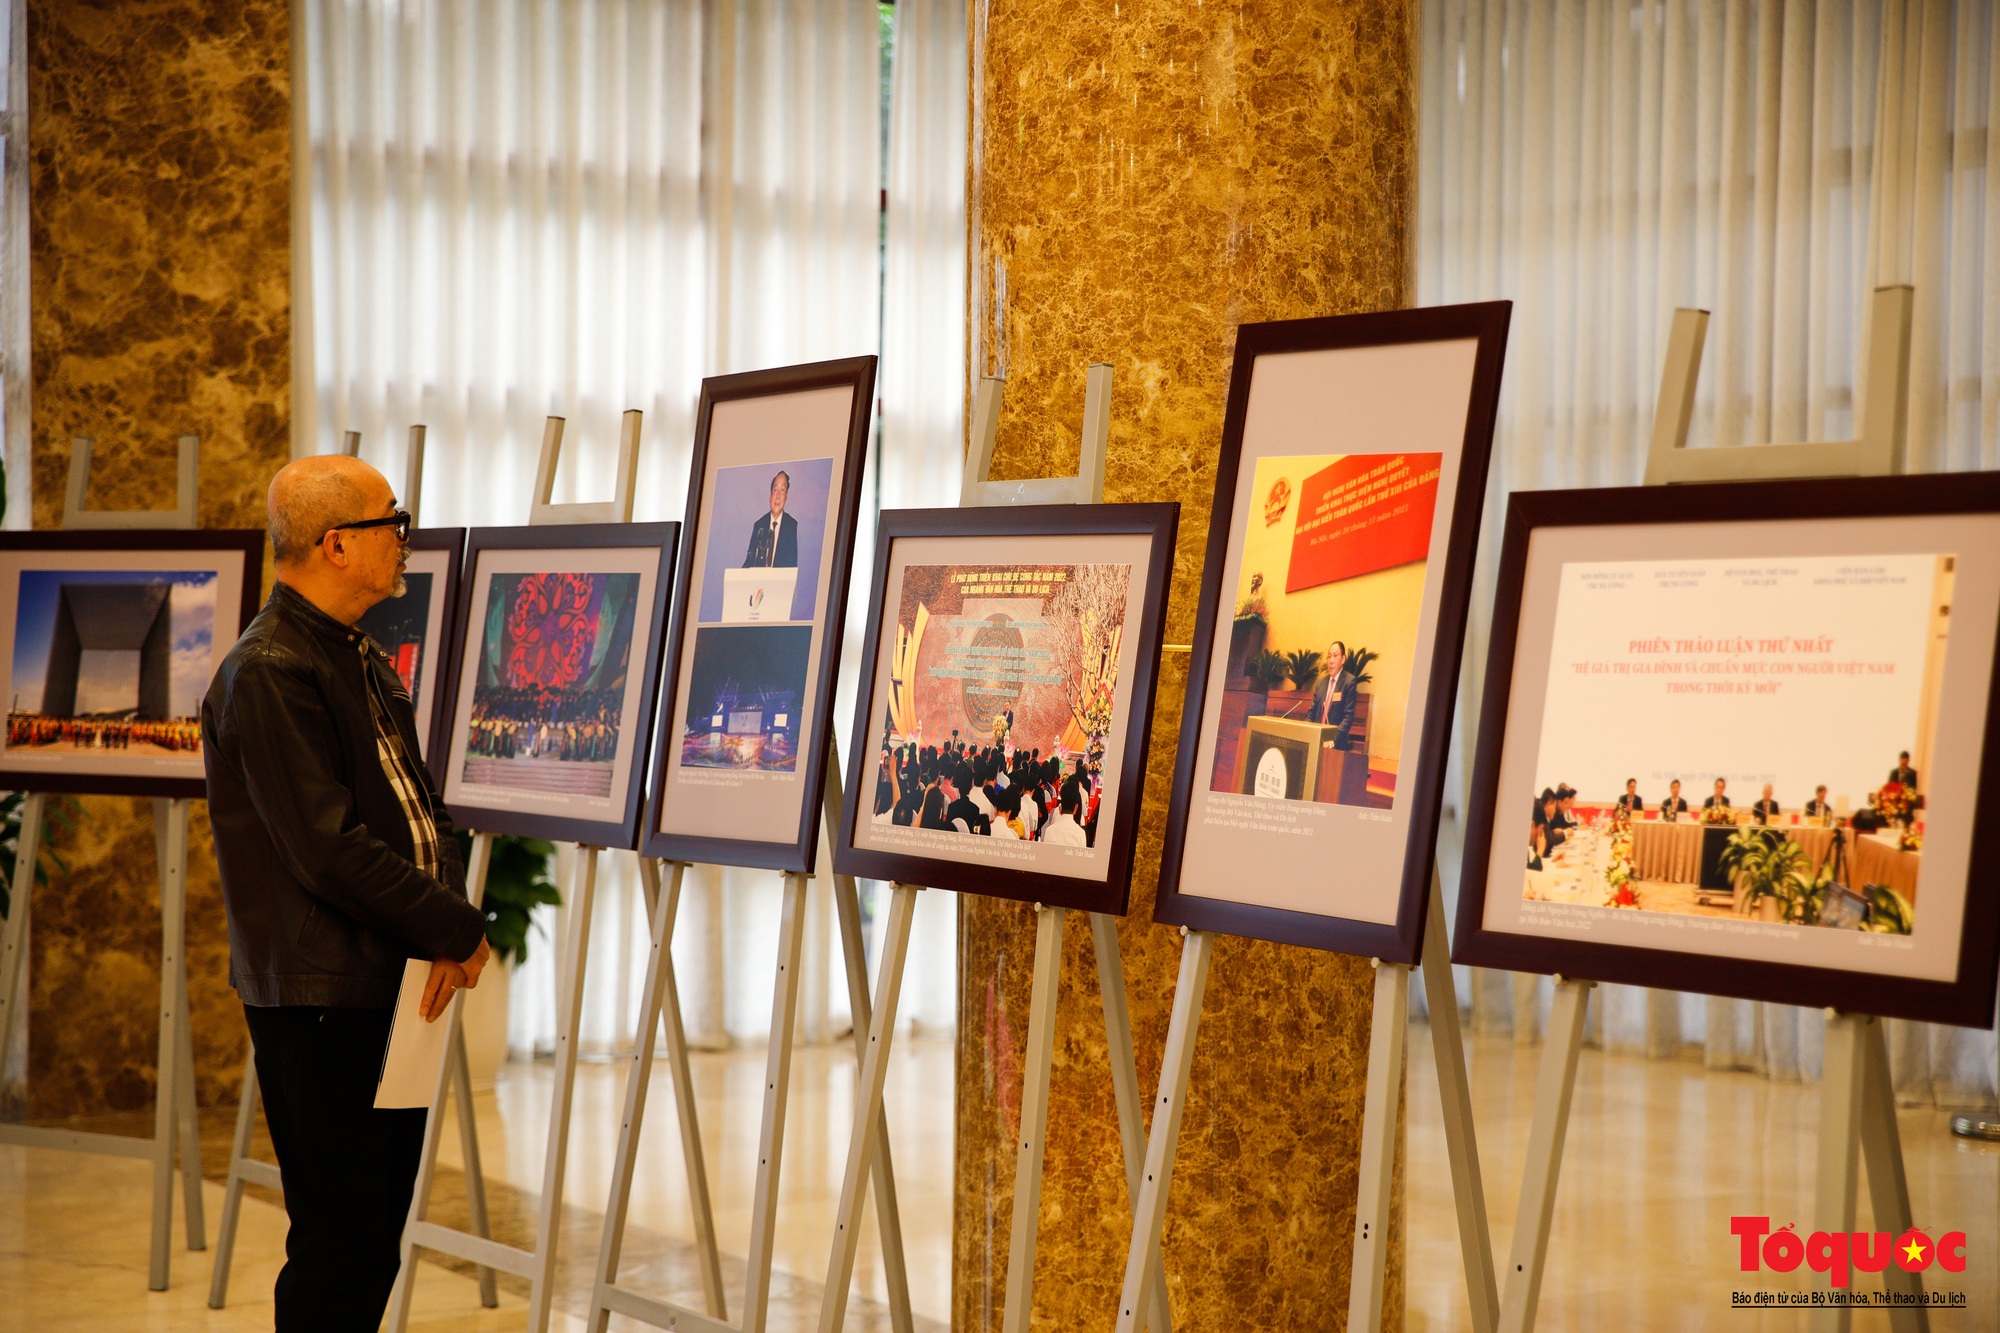 Lãnh đạo Bộ Văn hóa, Thể thao và Du lịch kiểm tra công tác chuẩn bị cho Triển lãm ảnh 80 năm Đề cương về Văn hóa Việt Nam - Ảnh 10.